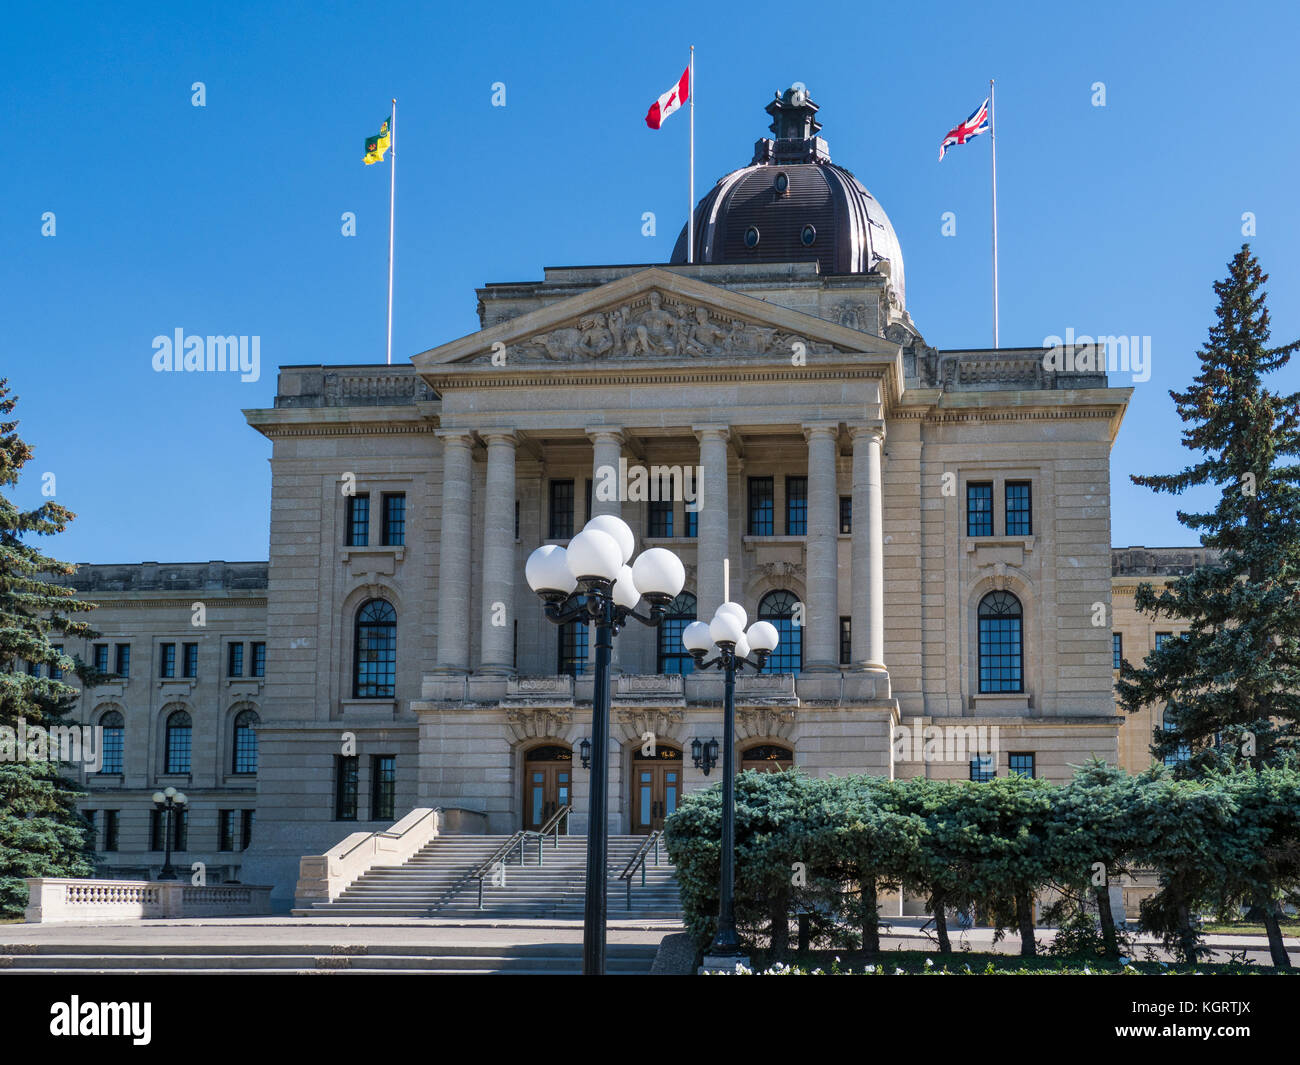 Saskatchewan Legislative Building, provincial capitol, Wascana Centre, Regina, Saskatchewan, Canada. Stock Photo